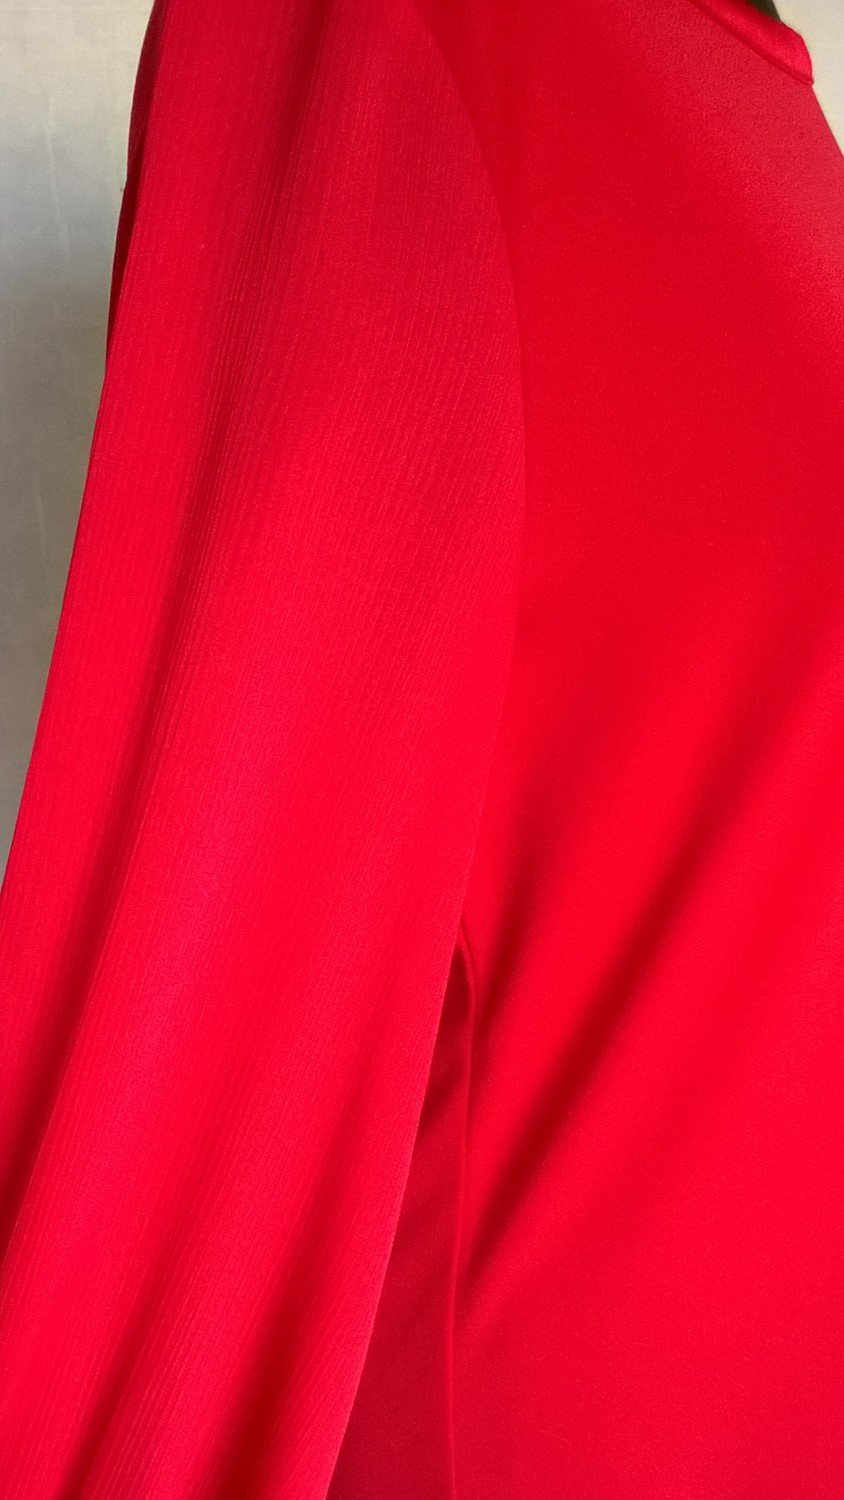 Shirt Oberteil Esprit Bluse Gr. rot ¾-Arm XS Schlupfbluse Top